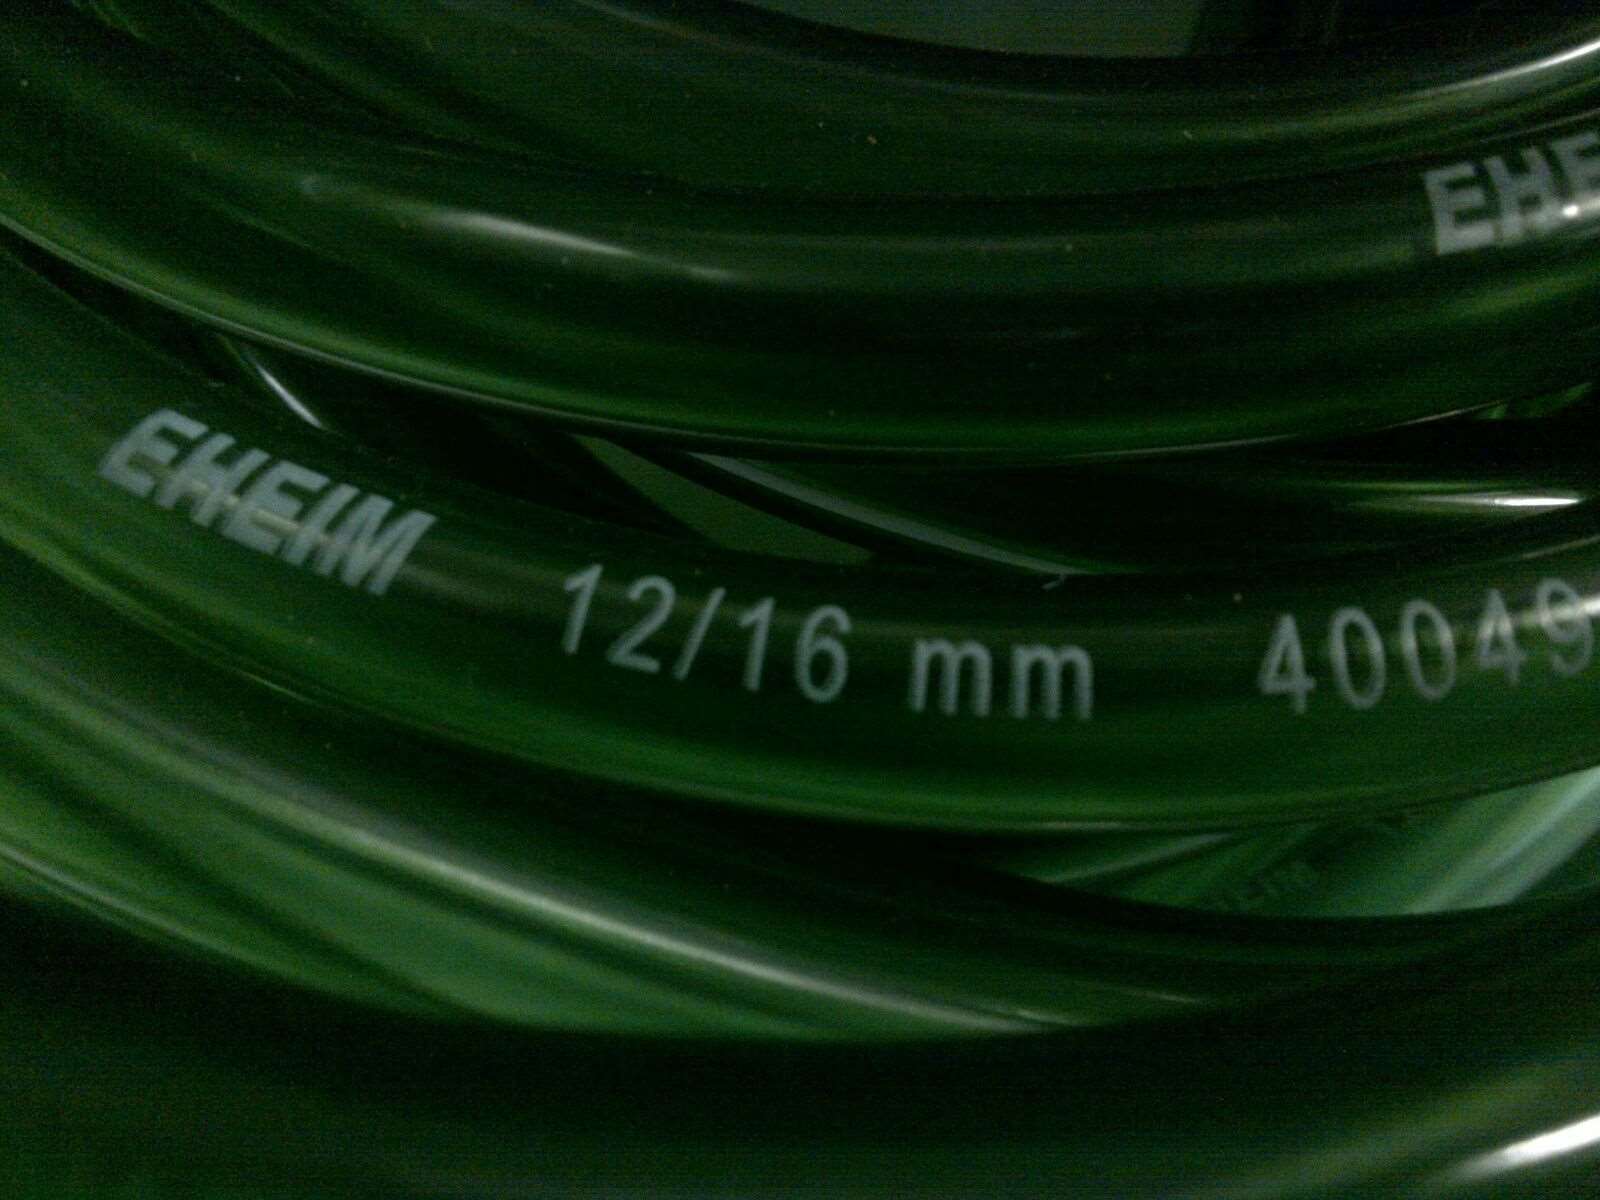 Eheim 12/16 hoses 5 metres